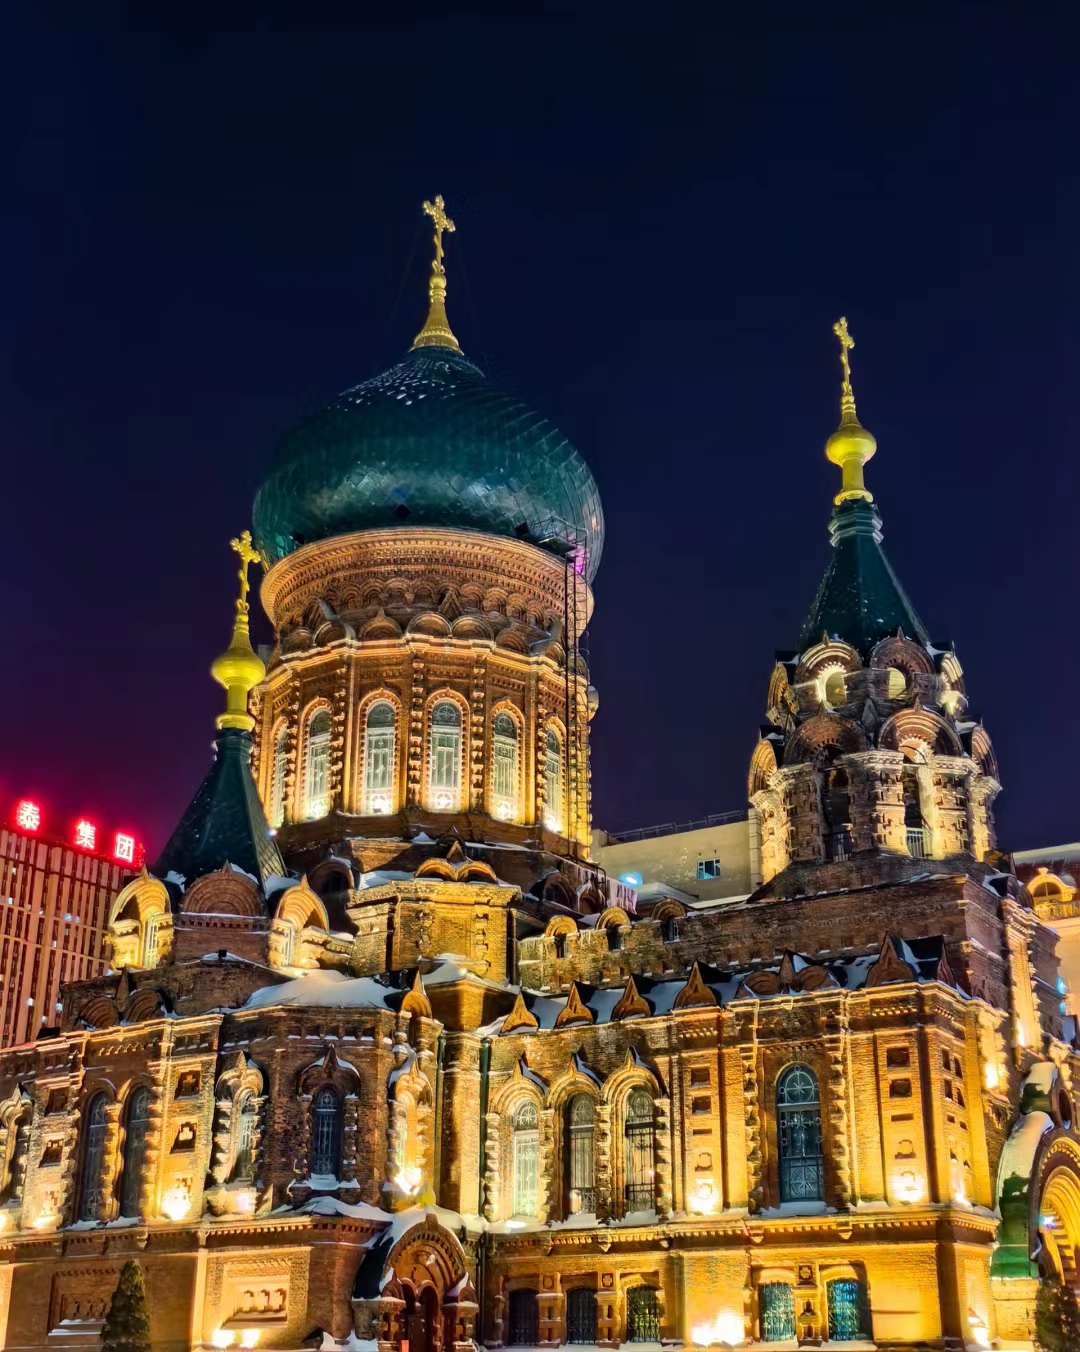 索菲娅俄罗斯教堂-圣尼古拉斯奇迹教堂